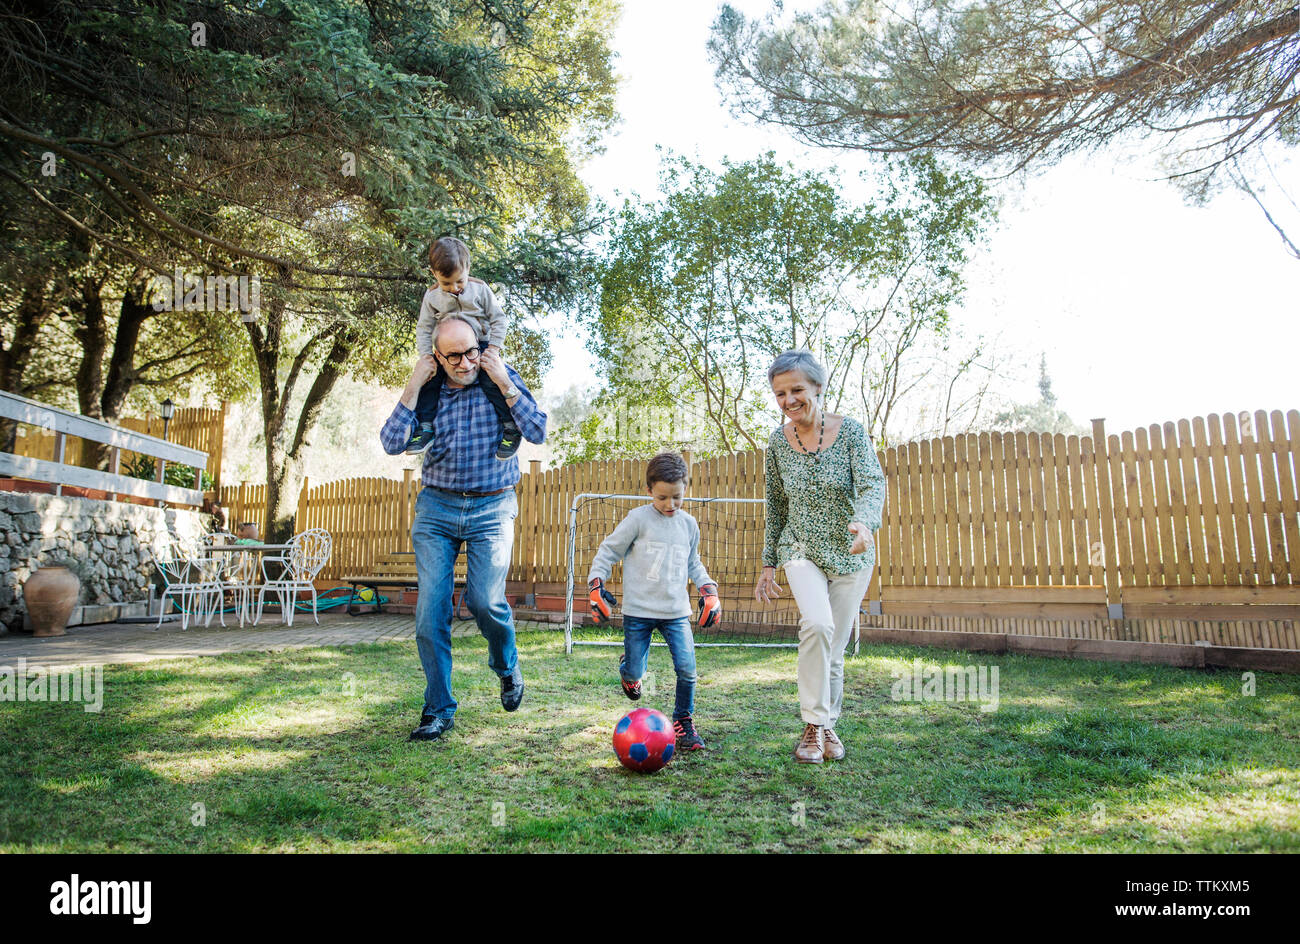 Toute la longueur de leurs grands-parents et petits-fils joue au soccer at yard Banque D'Images